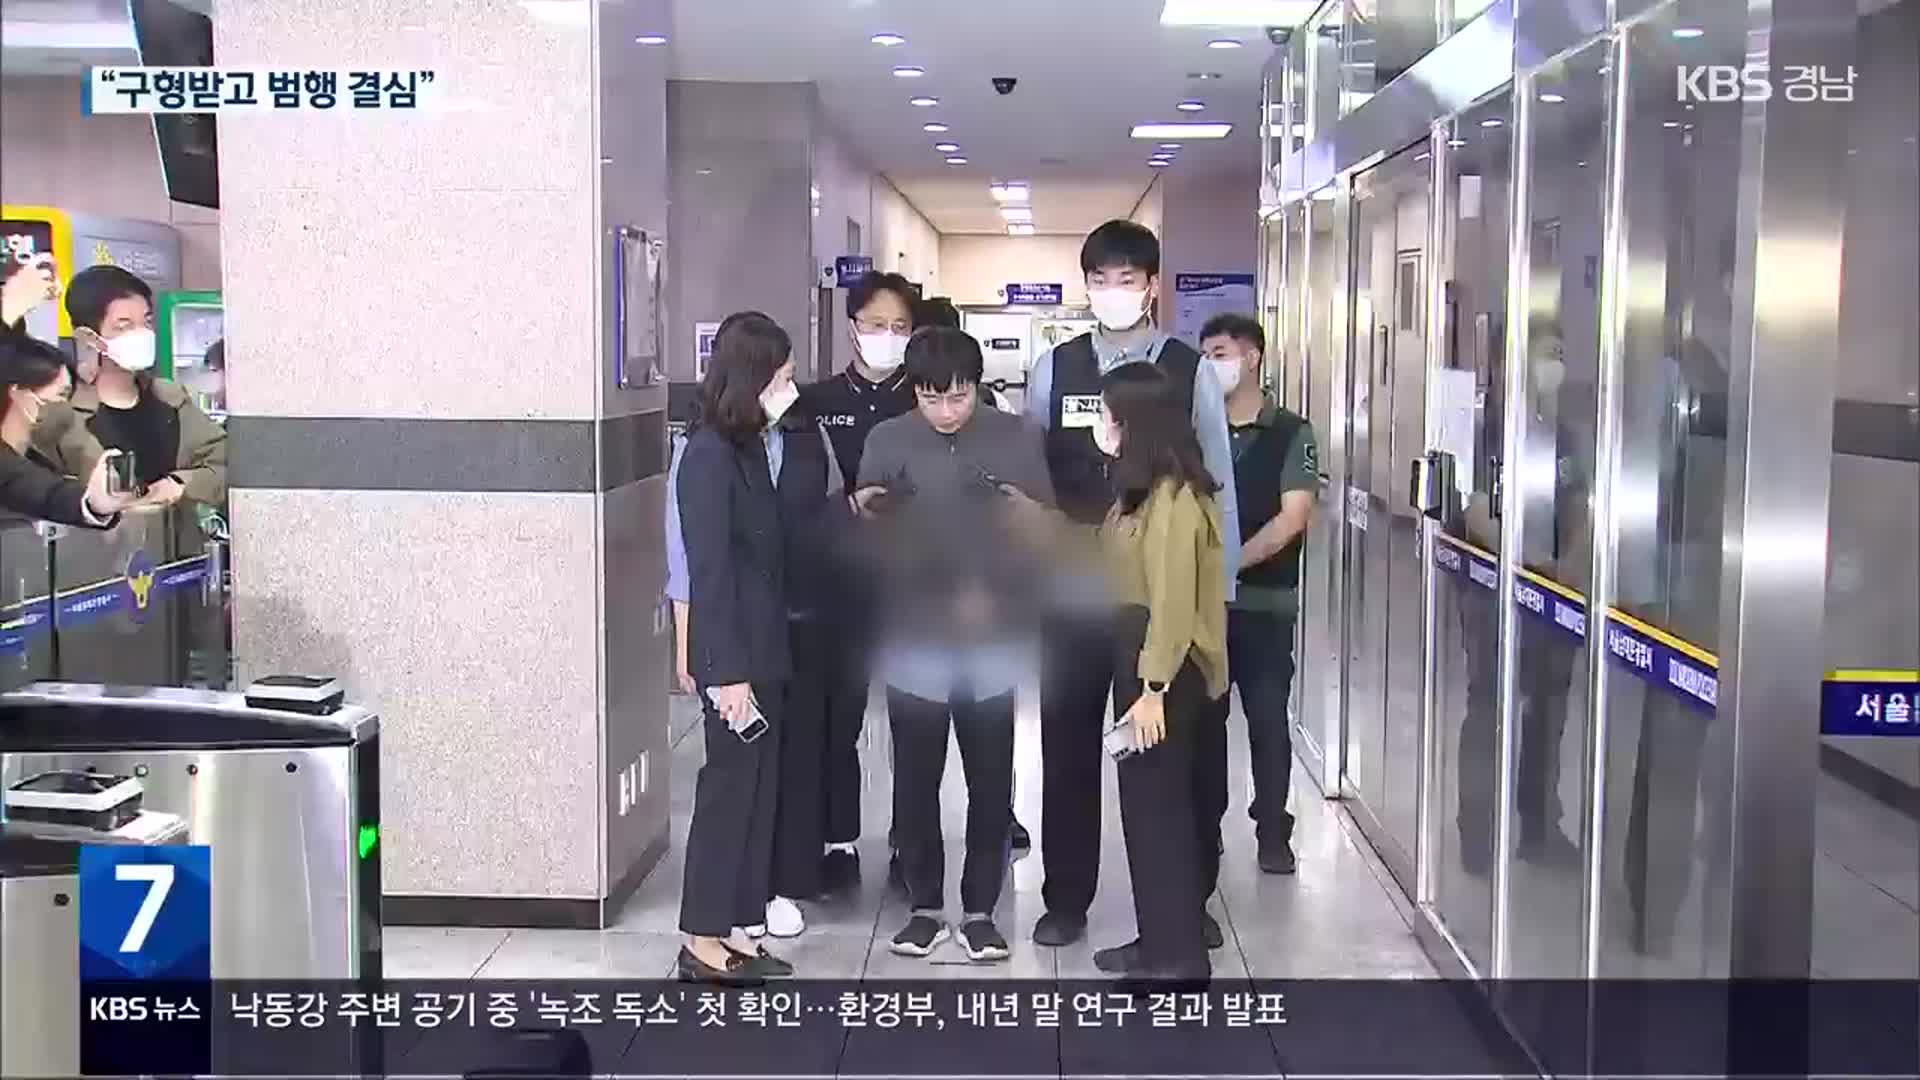 “전주환, 구형 받고 범행 결심”…검찰 전담수사팀 구성